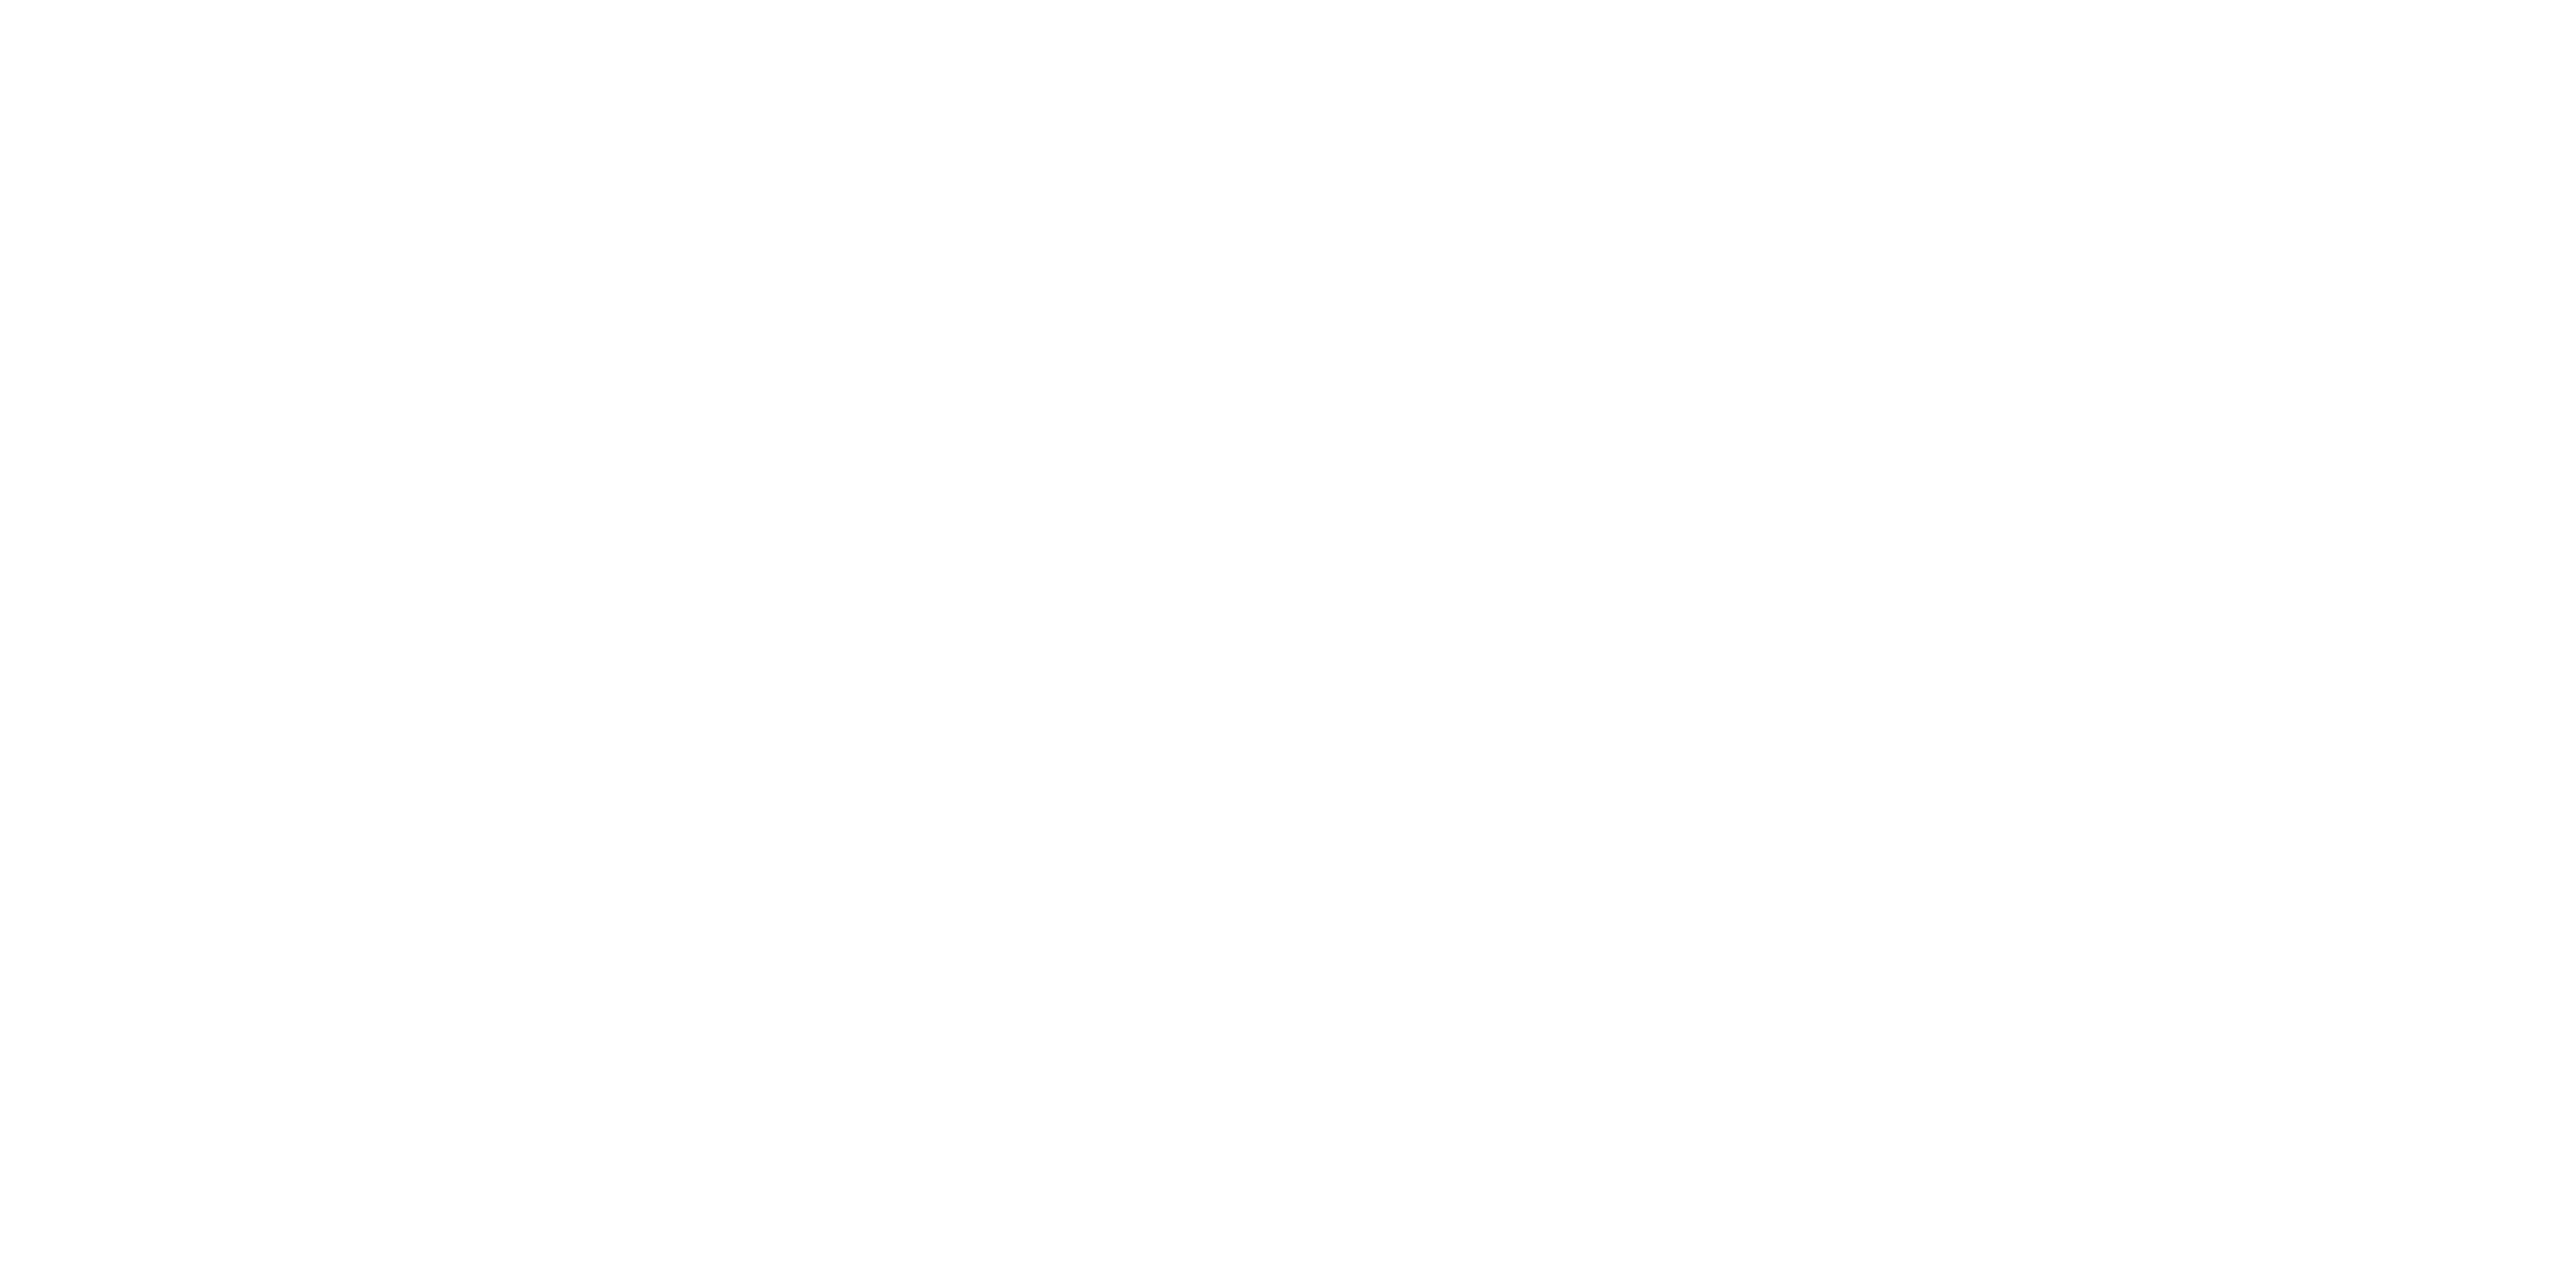 No Talent